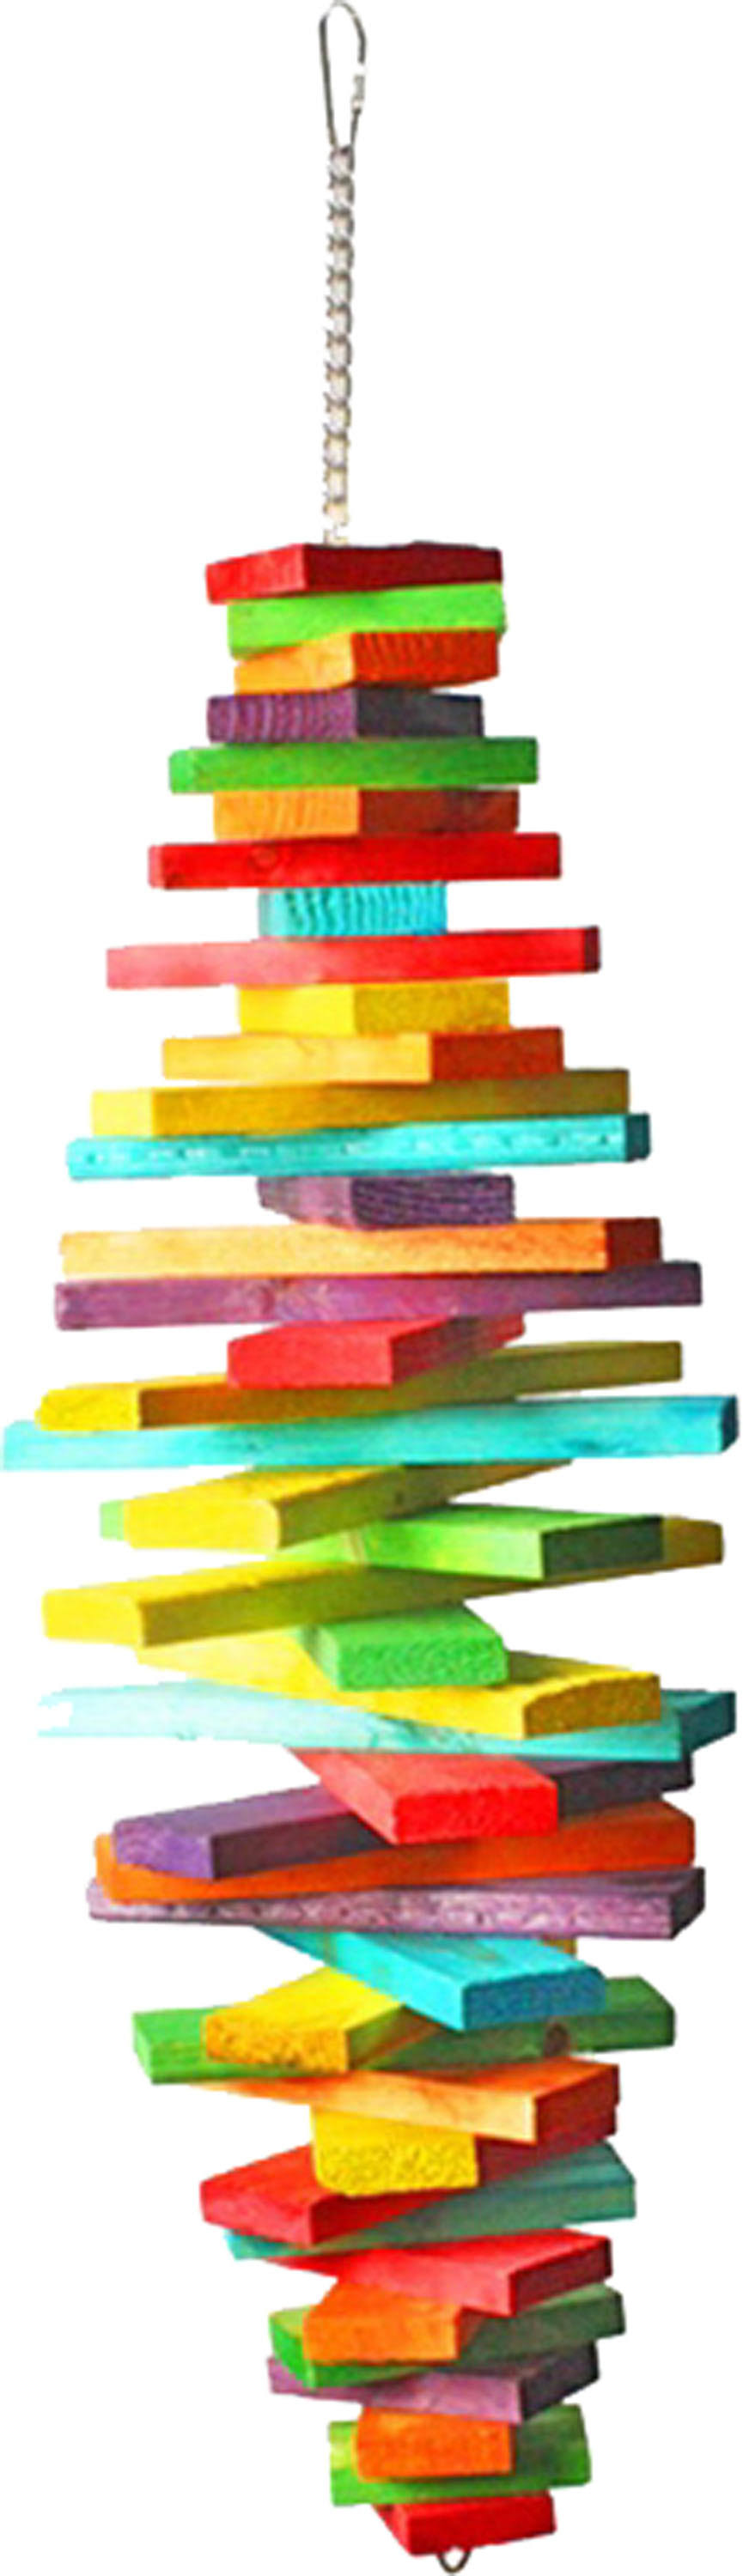 A & E Cage HB01268 Spiral Blocks, Multicolor - Medium